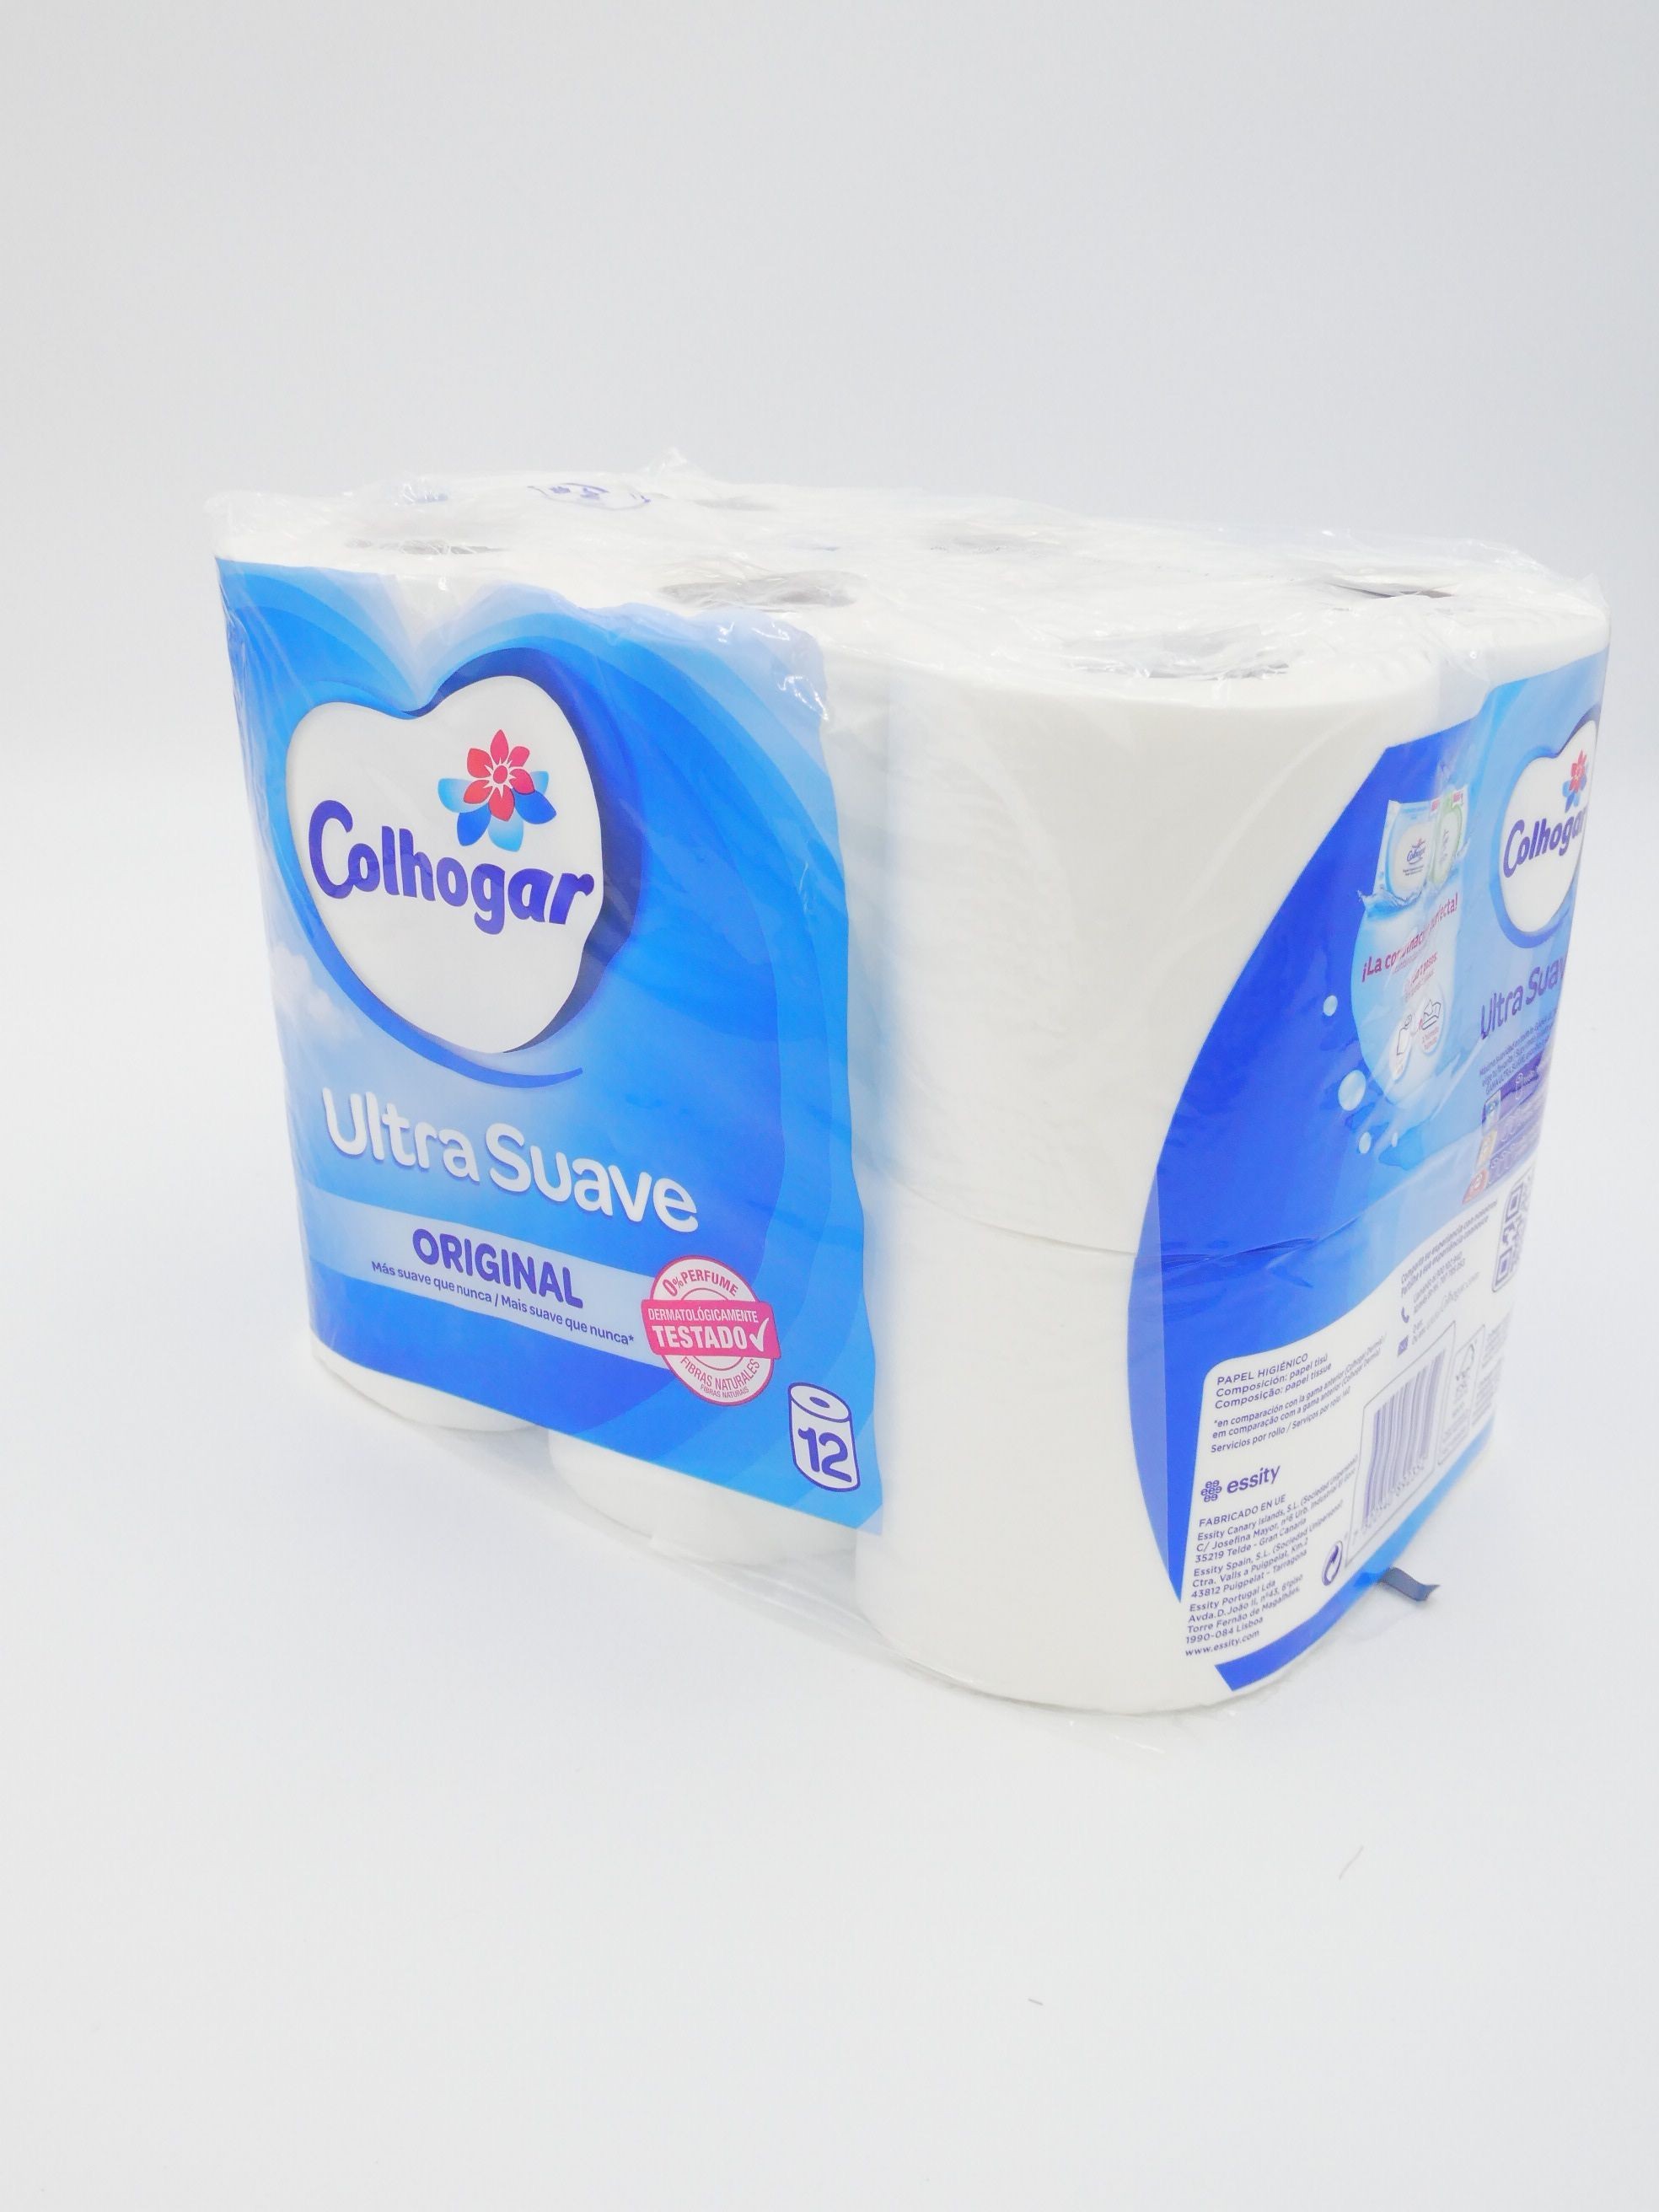 COLHOGAR Papel higiénico Ultra suave Original de 12 unidades.